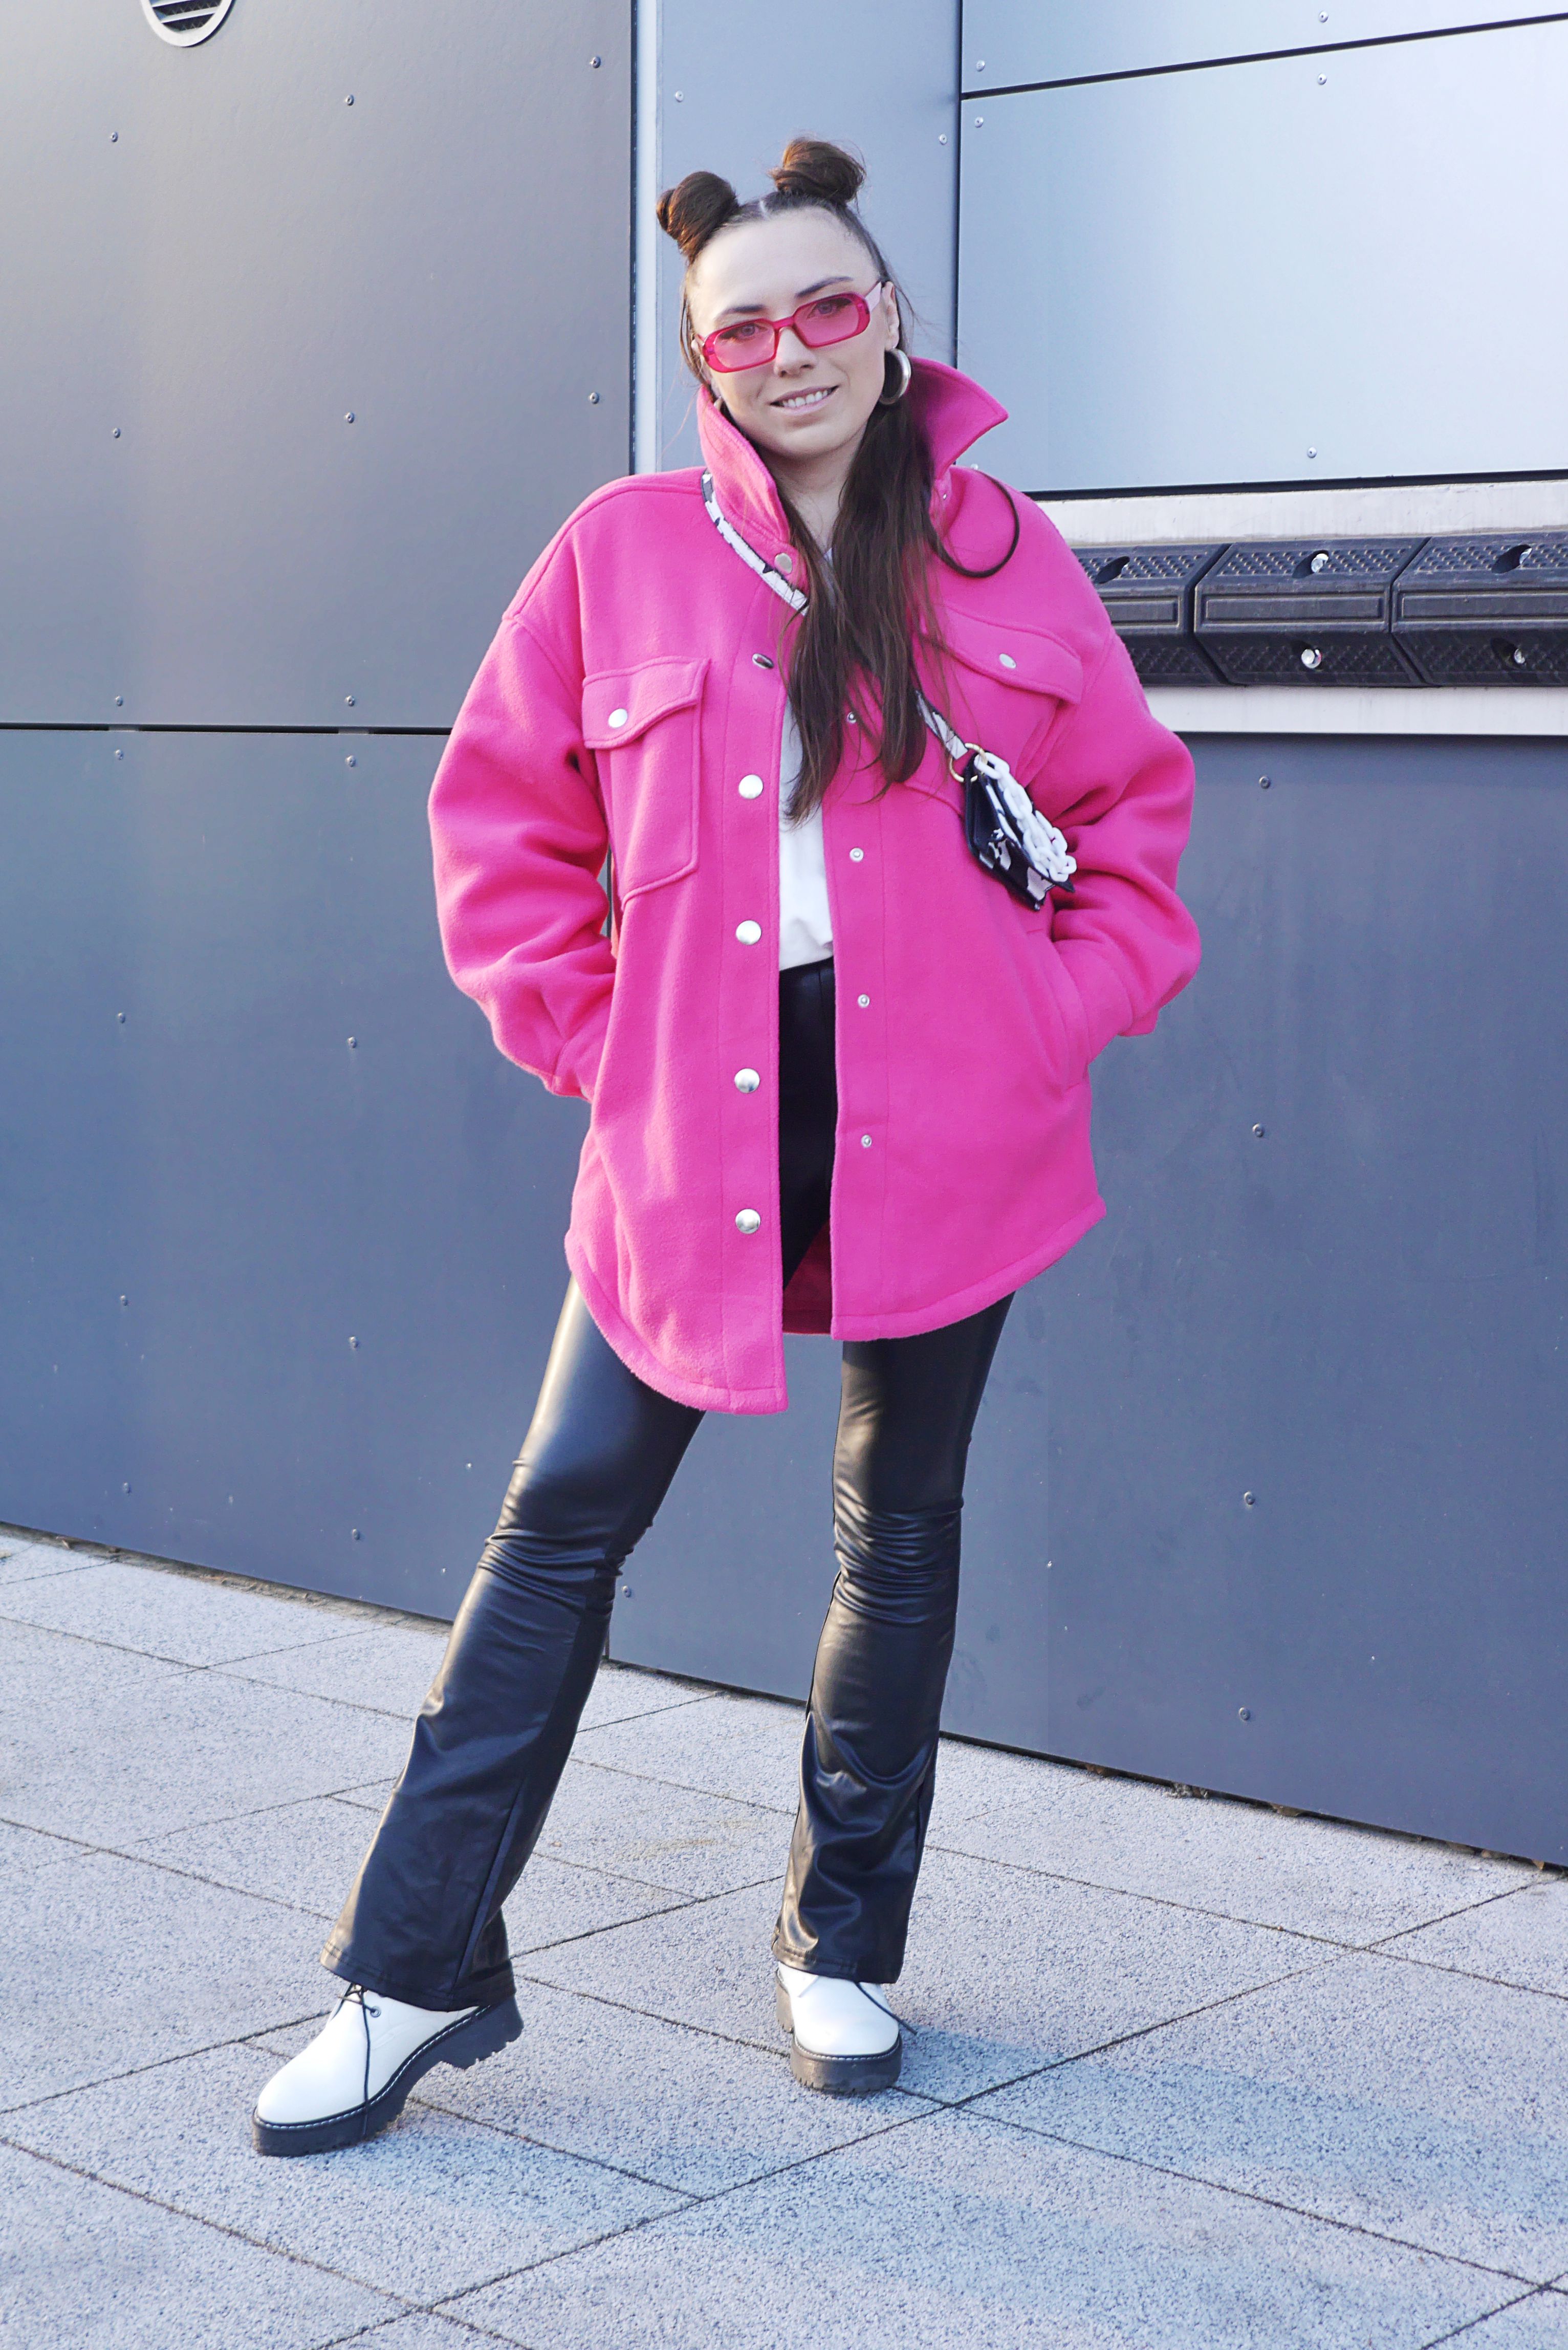 Blog modowy blogerka modowa karyn Puławy stylizacja różowa kurtka koszulowa bonprix biała bluza w serek legginsy spodnie dzwony ekoskóra skóra białe trapery ccc torebka krowa różowe okulary ootd look zimowy zimowa jak nosić kolor w zimie